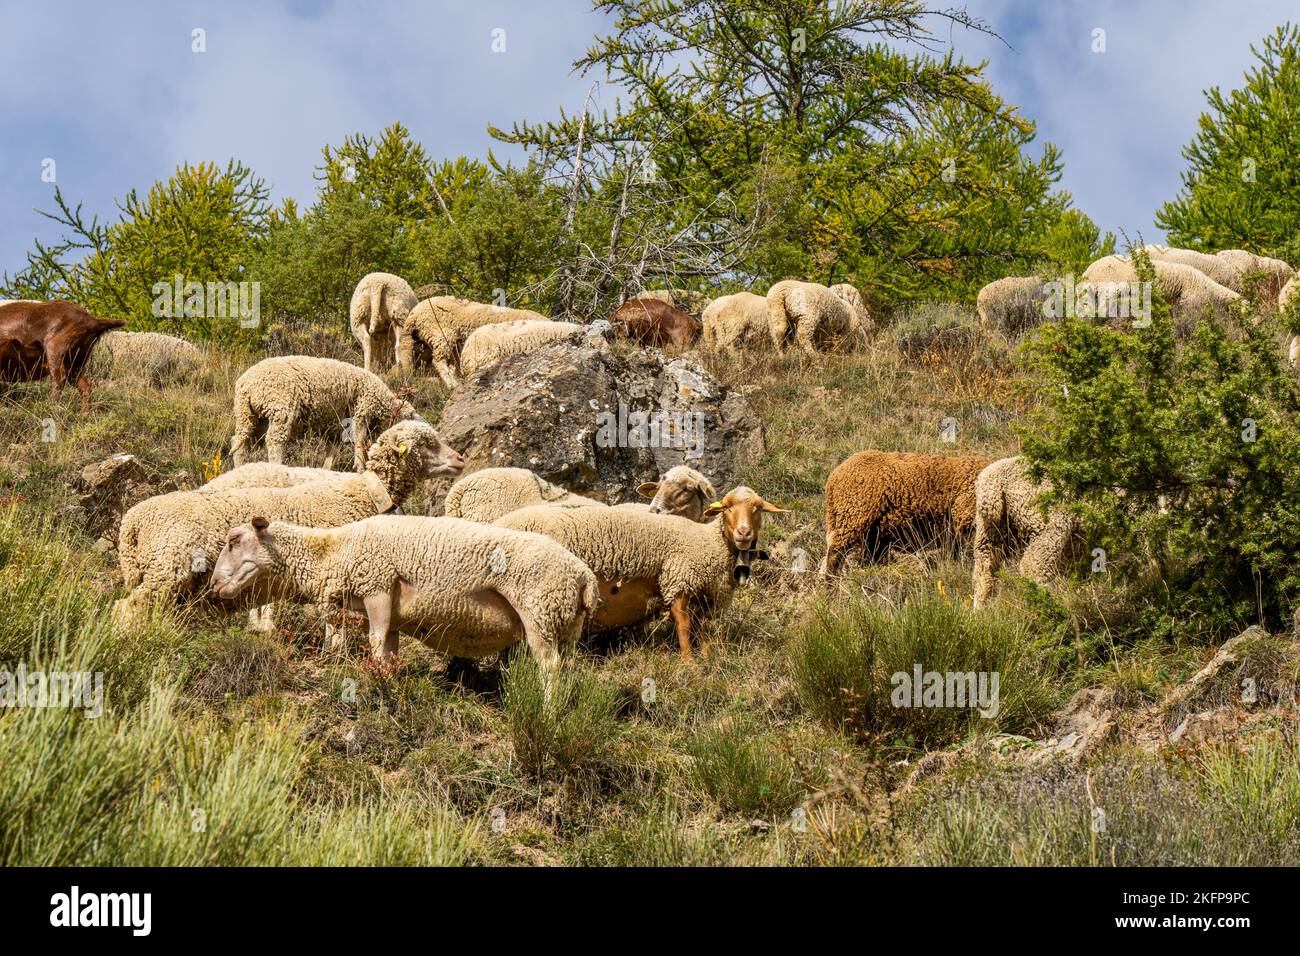 Herde von Schafen grasen auf der A-Weide im Hochland, im Herbst, gegen den Felsen und Bäume Hintergrund. Französische Schafe. Fotos in hoher Qualität Stockfoto